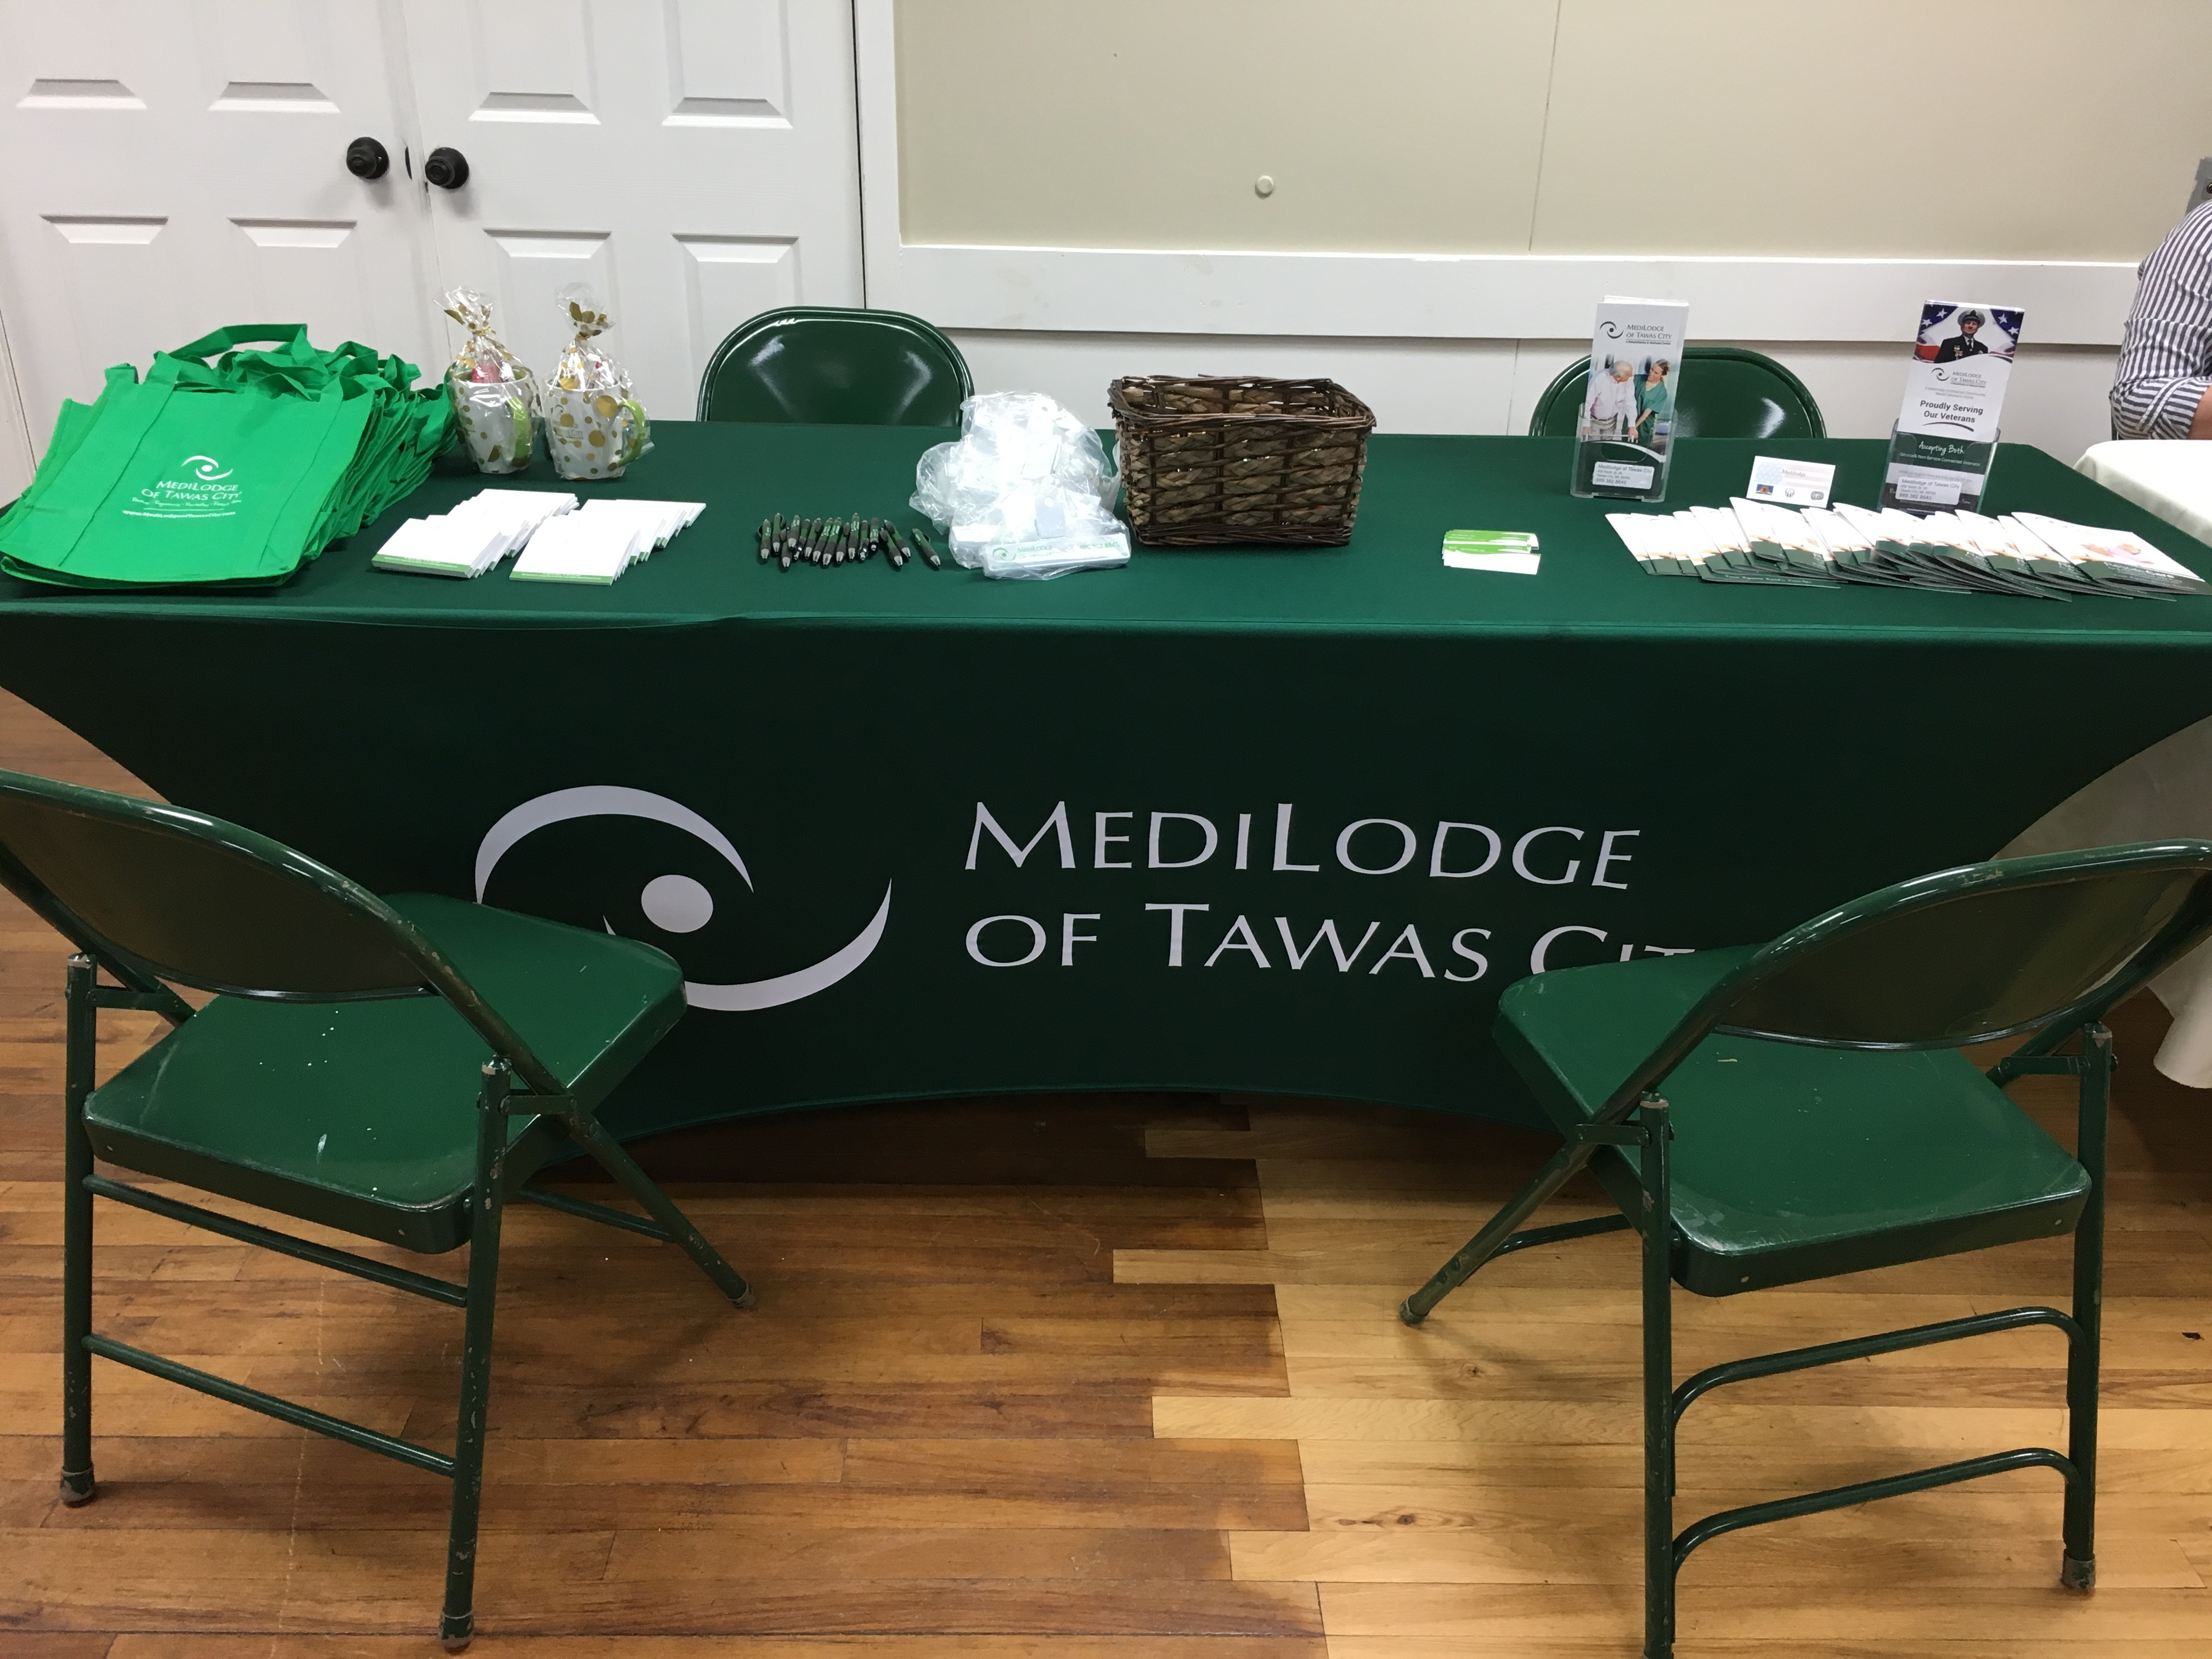 medilodge of tawas city table at veteran benefit fair